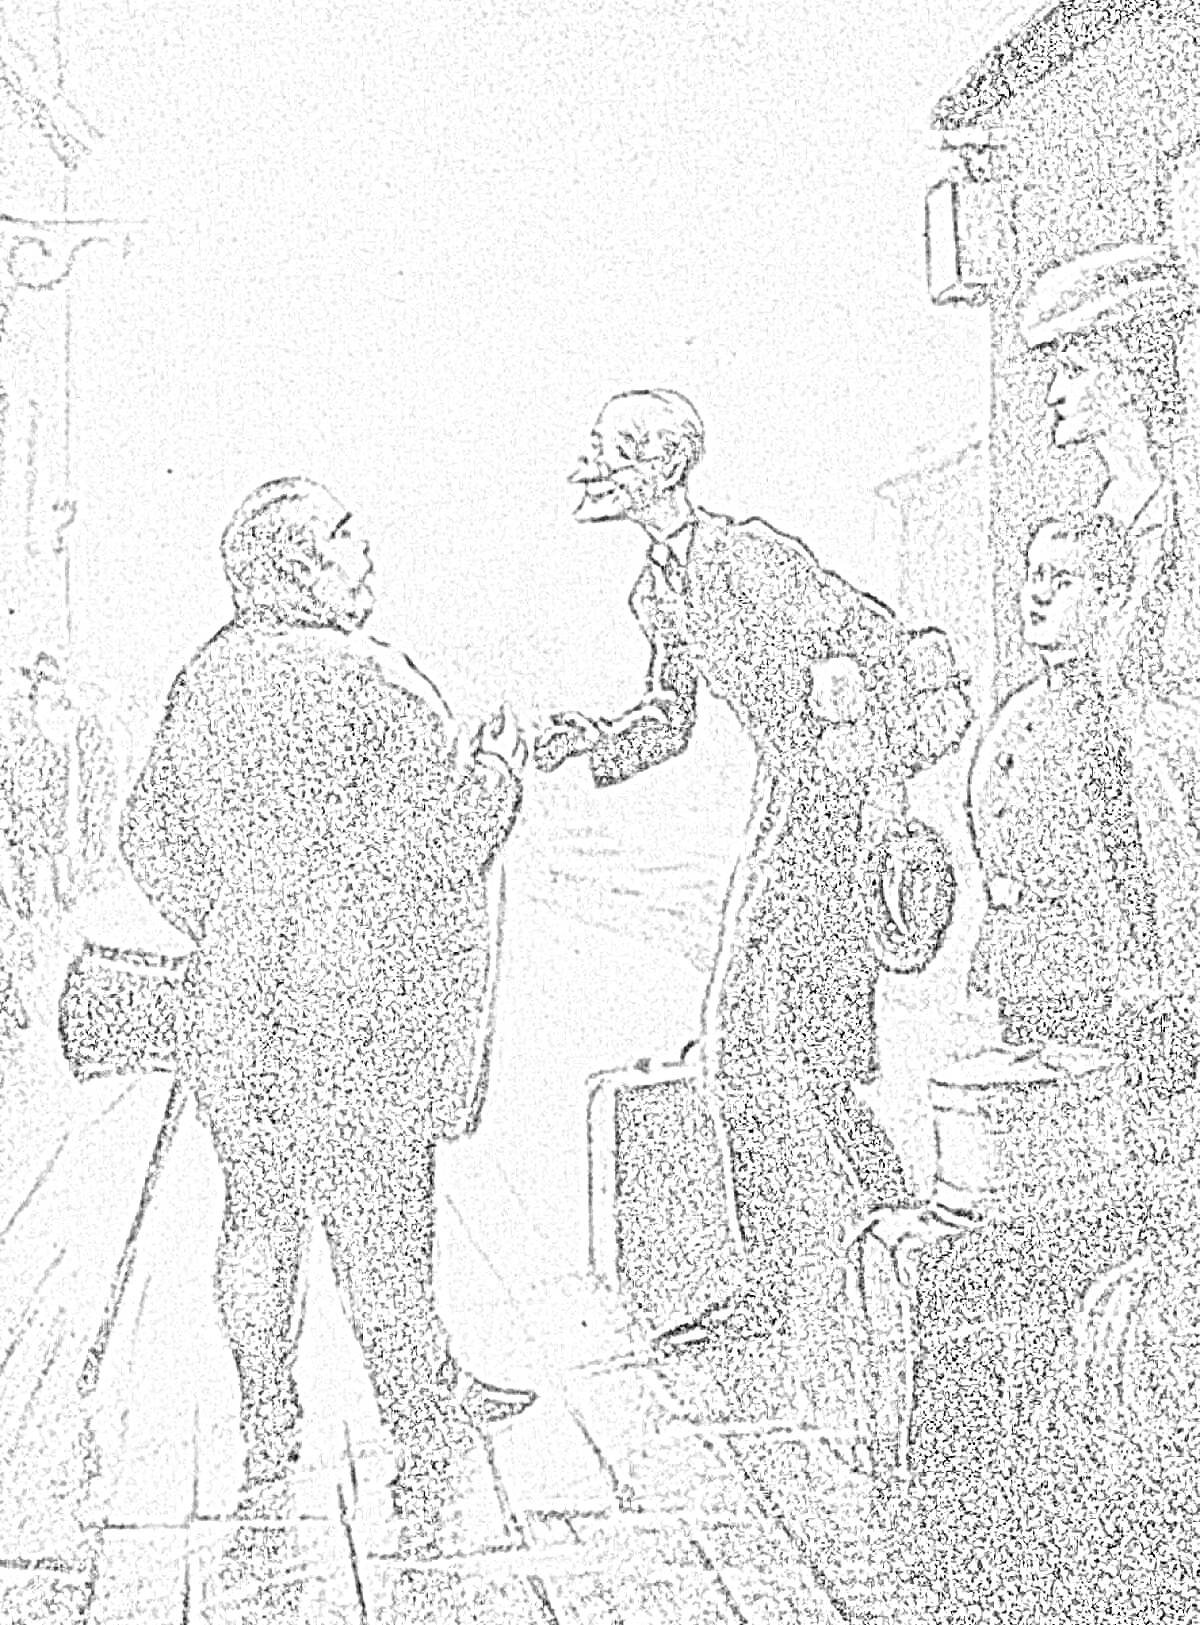 Раскраска Встреча толстого и тонкого на вокзале, рукопожатие рядом с чемоданами.